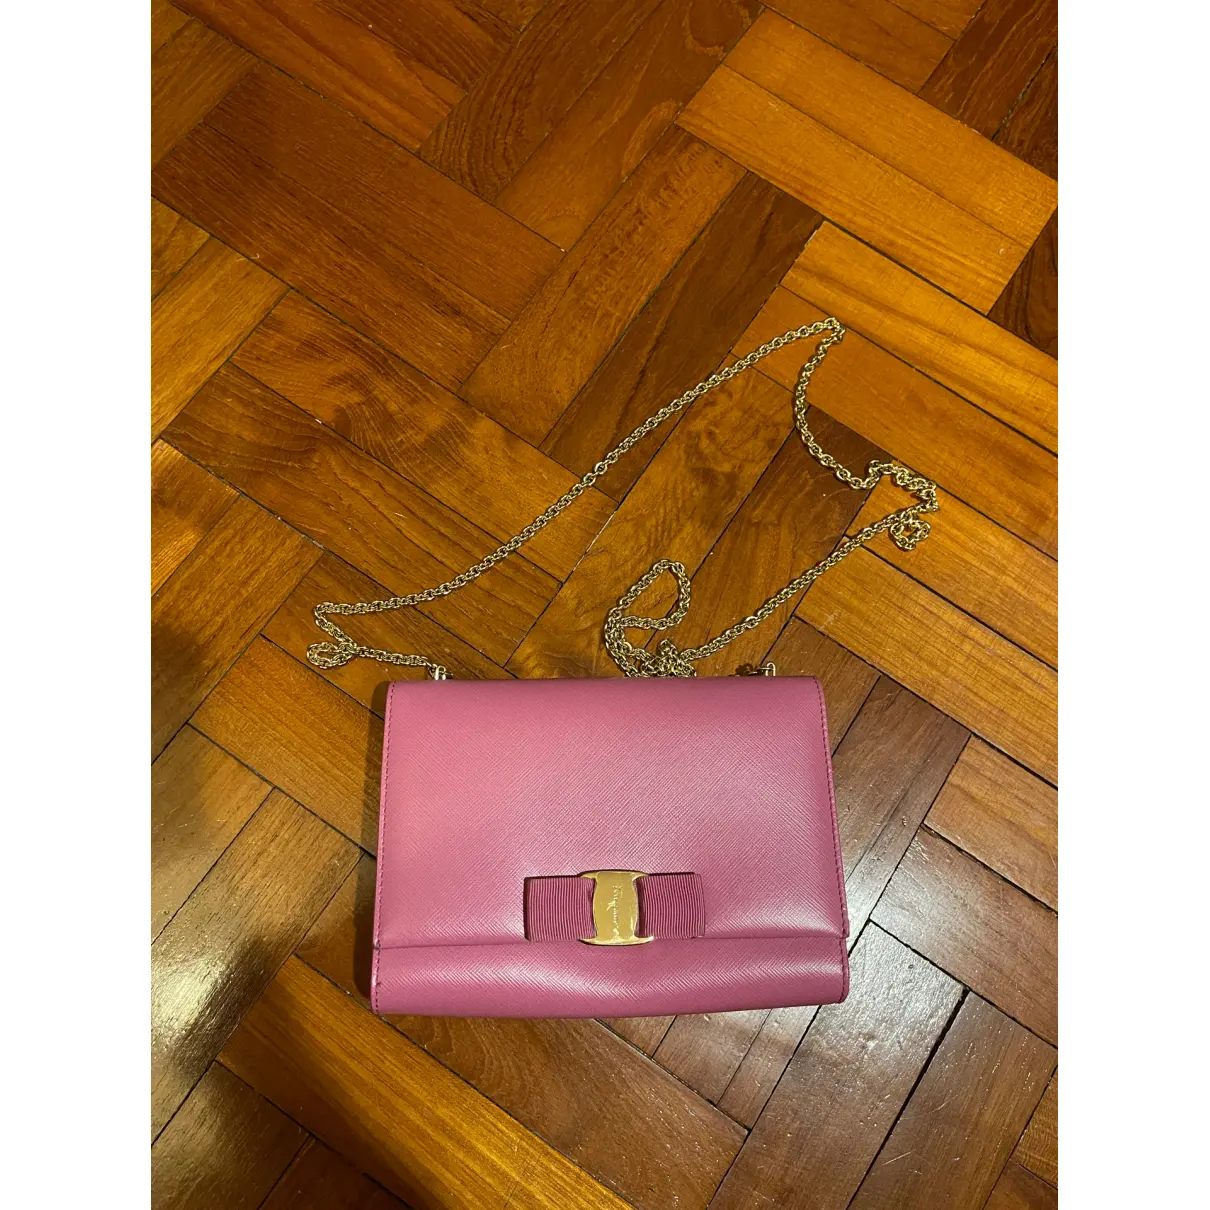 Buy Salvatore Ferragamo Vara leather mini bag online